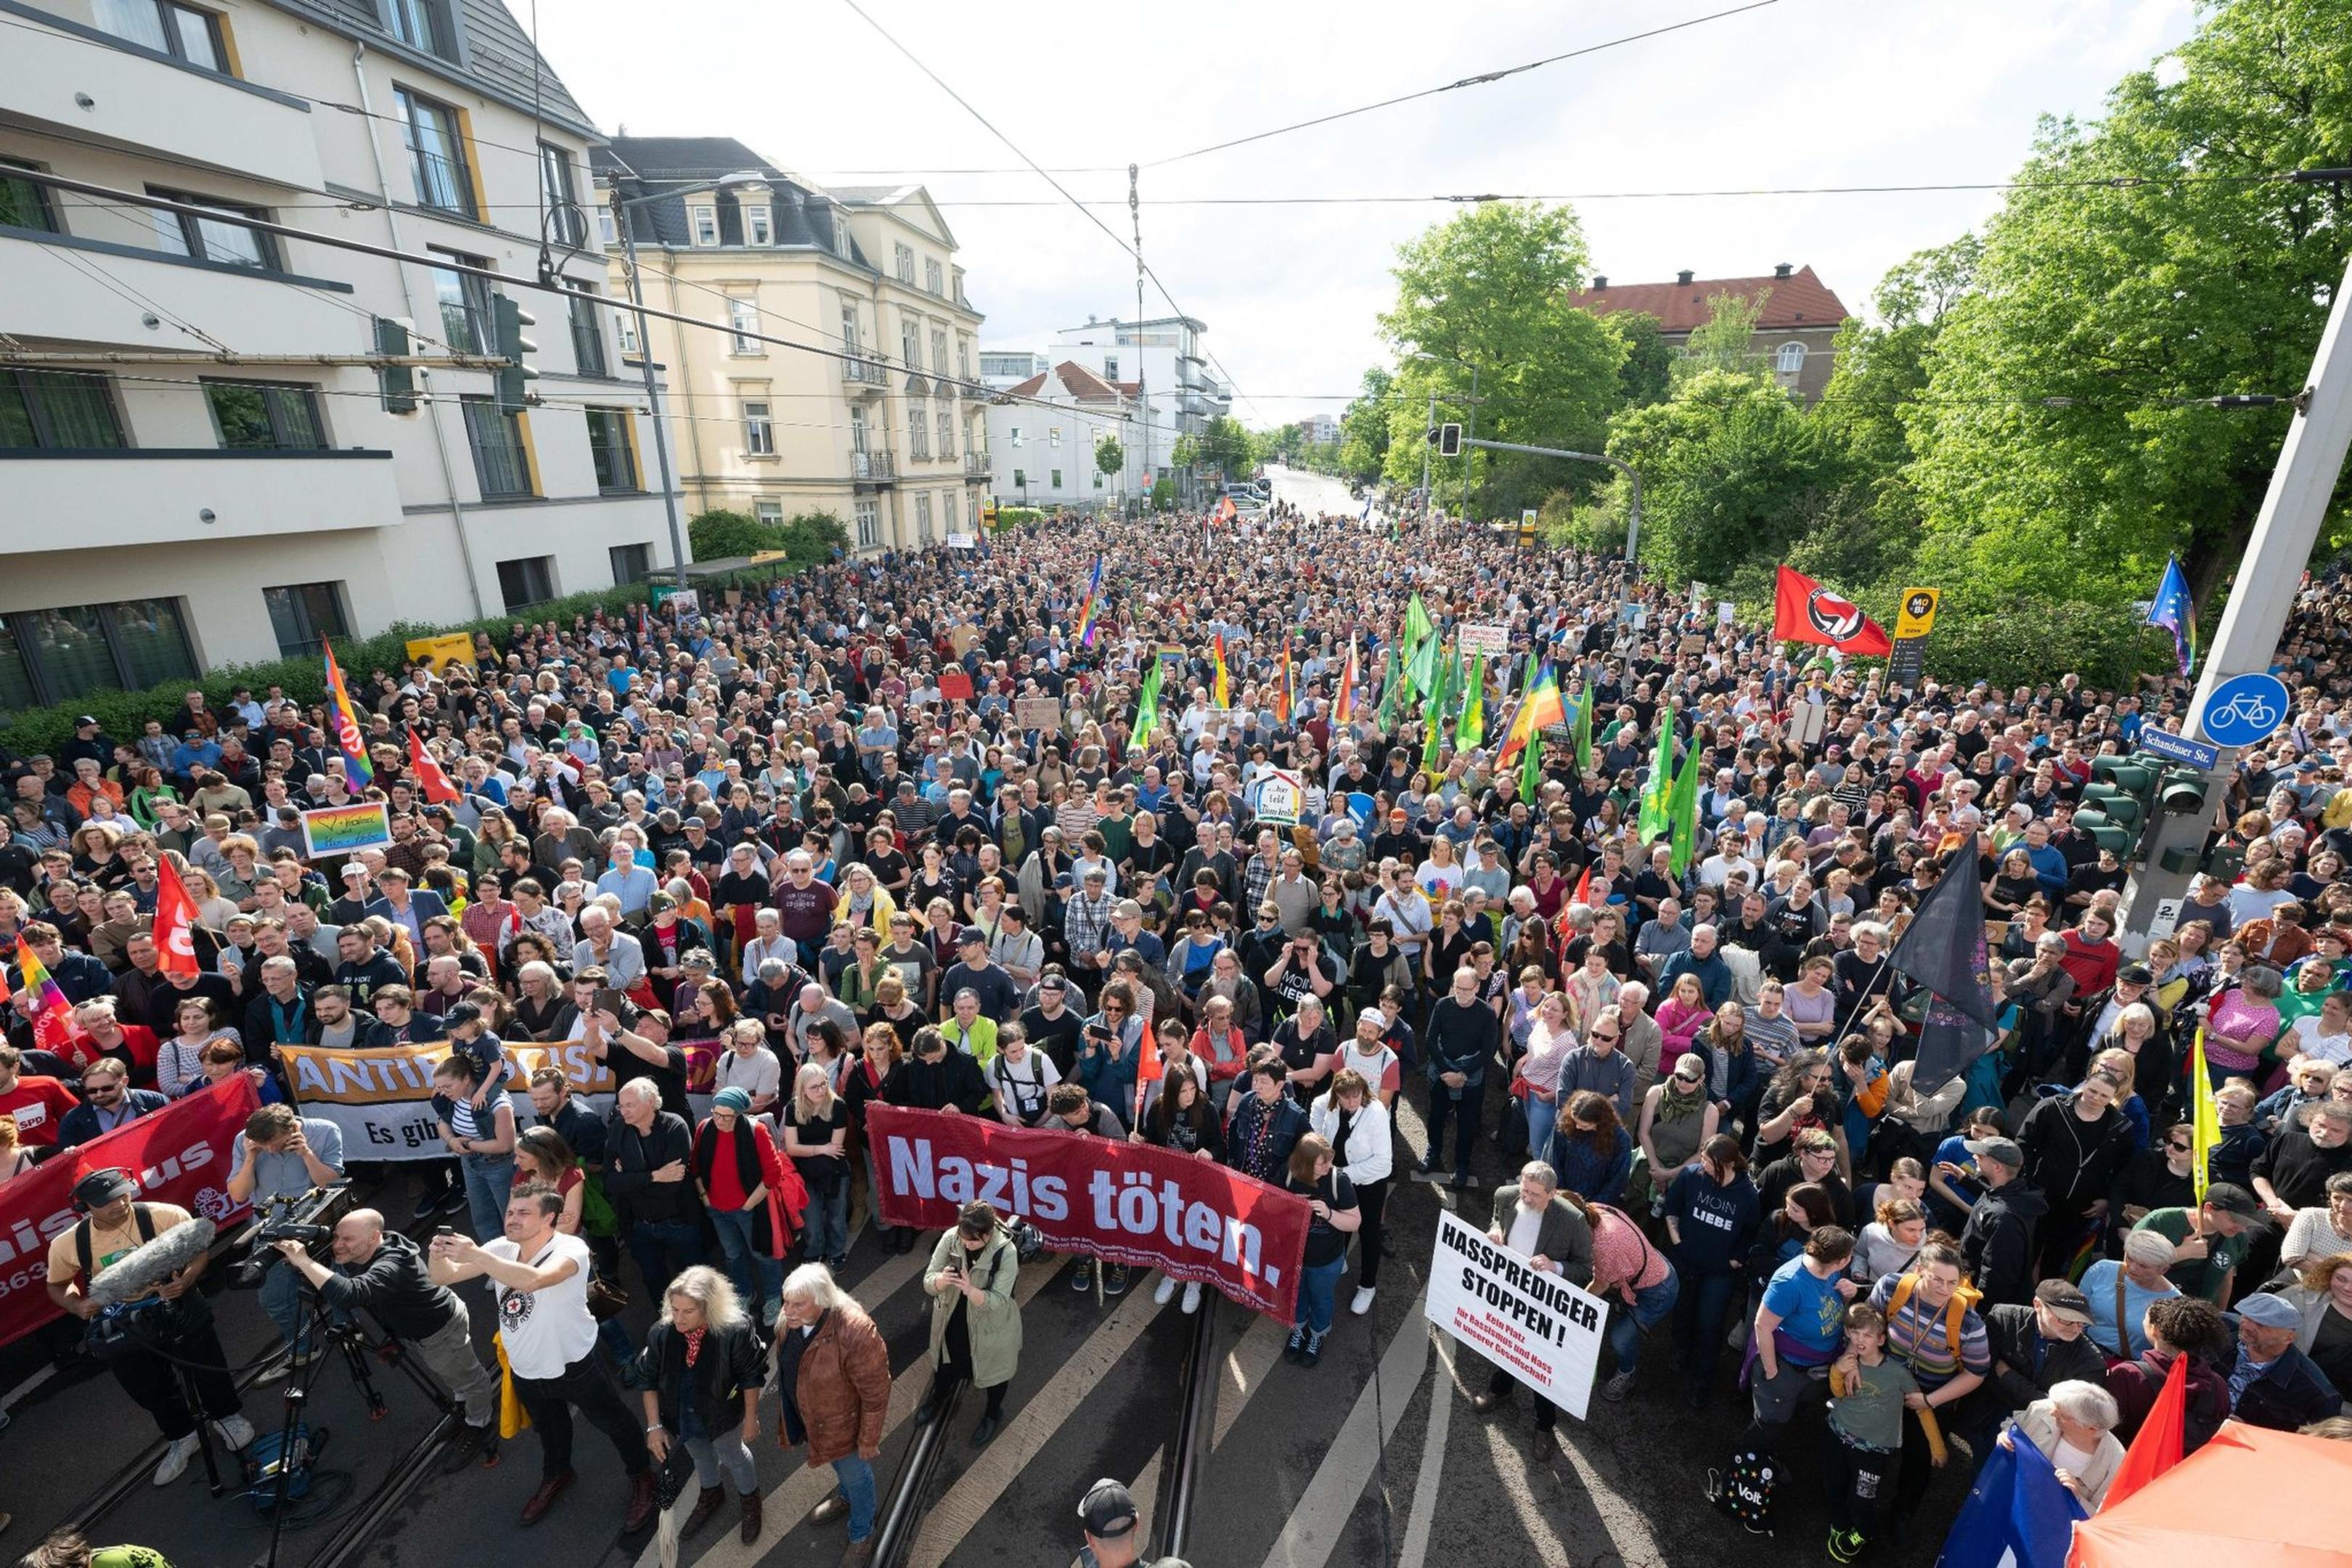 In Deutschland gibt es viel Solidarität mit den Angegriffenen. Die Menschen fordern nun Konsequenzen.